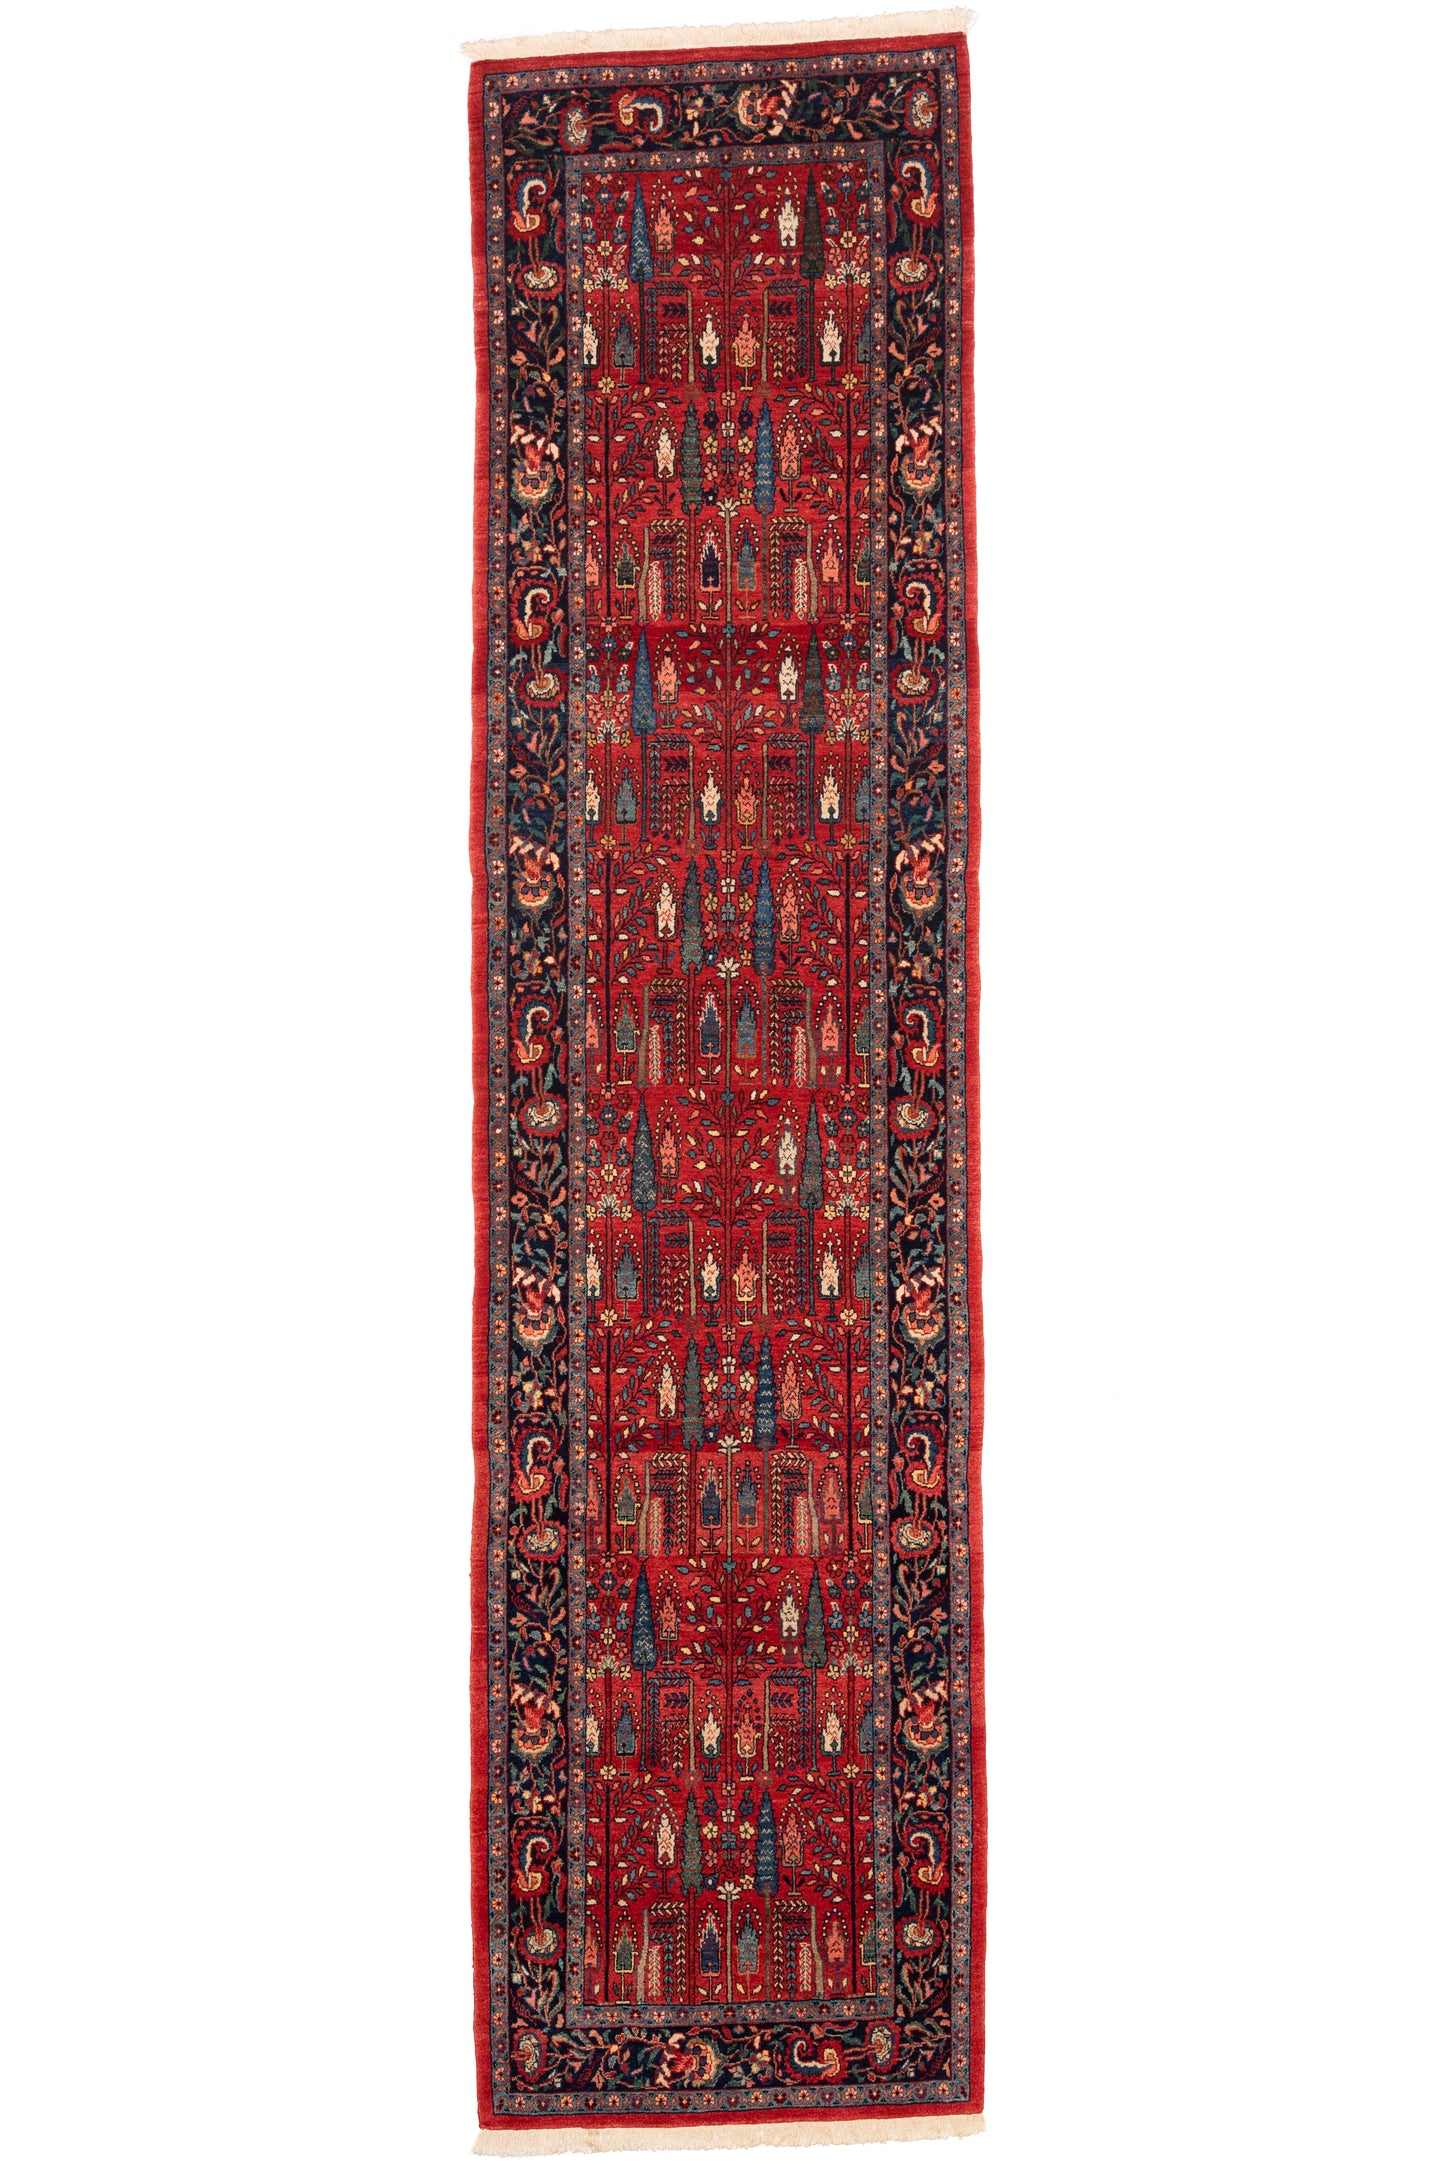 Bidjar Mirzai, 358 × 88 cm